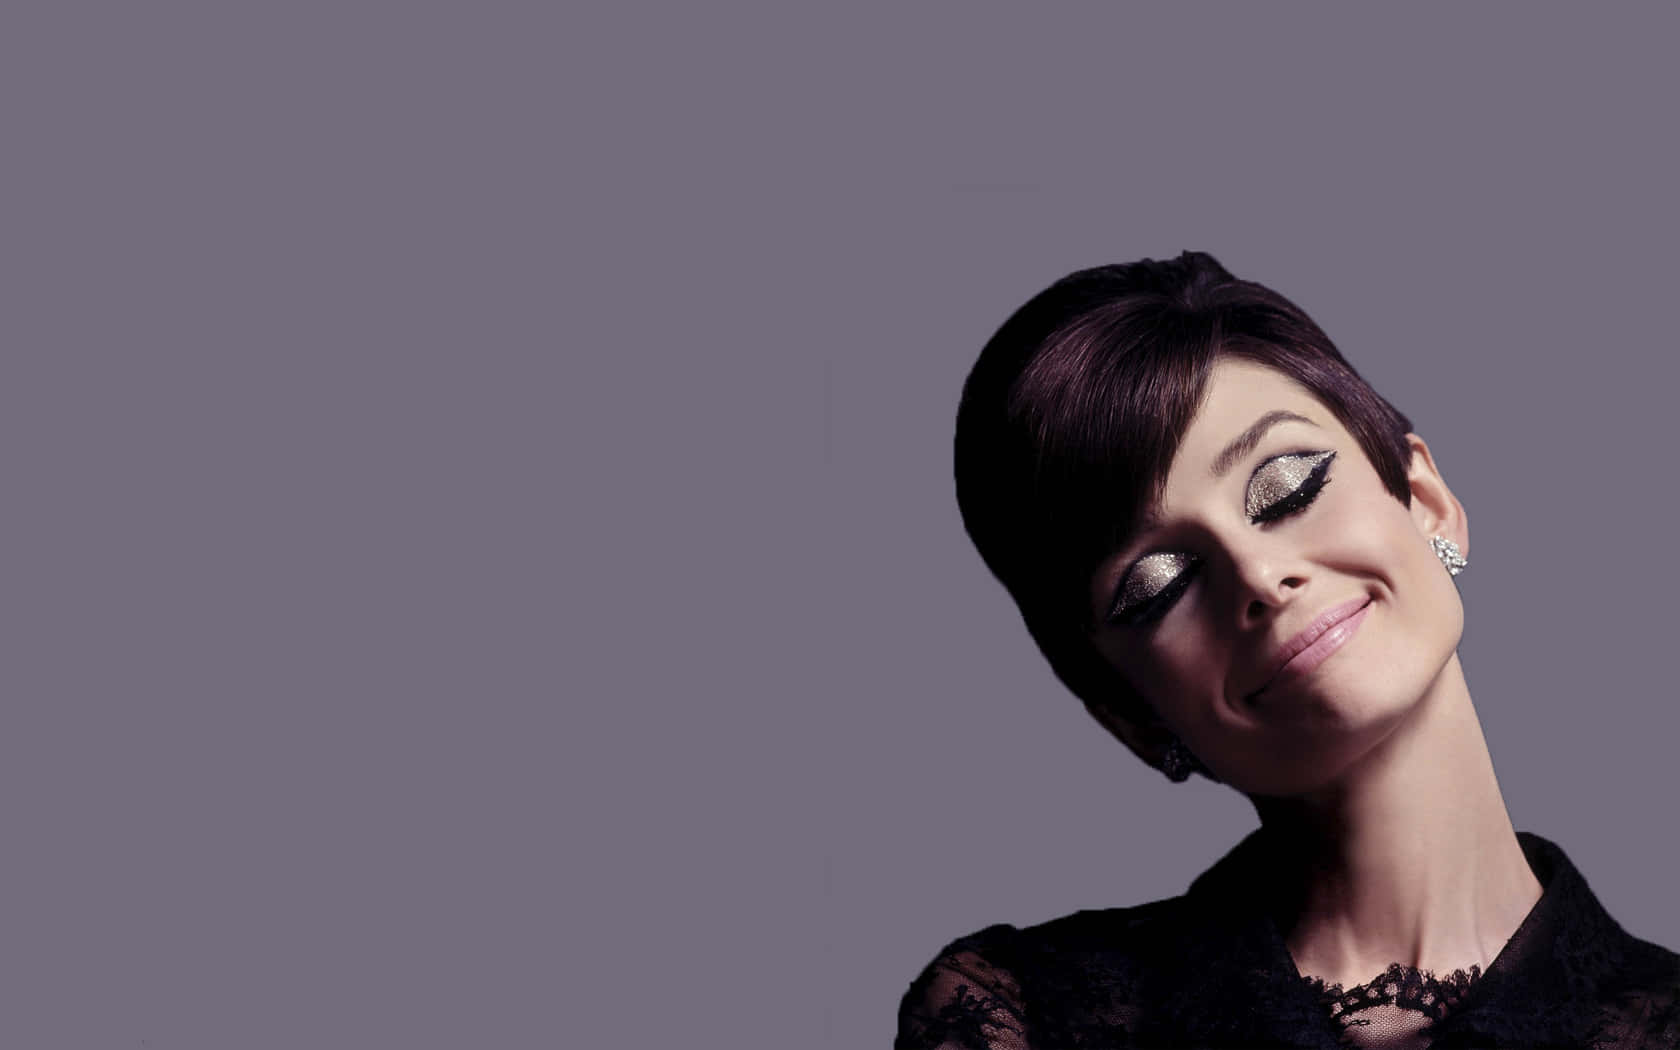 Tidløsskønhed - Audrey Hepburn